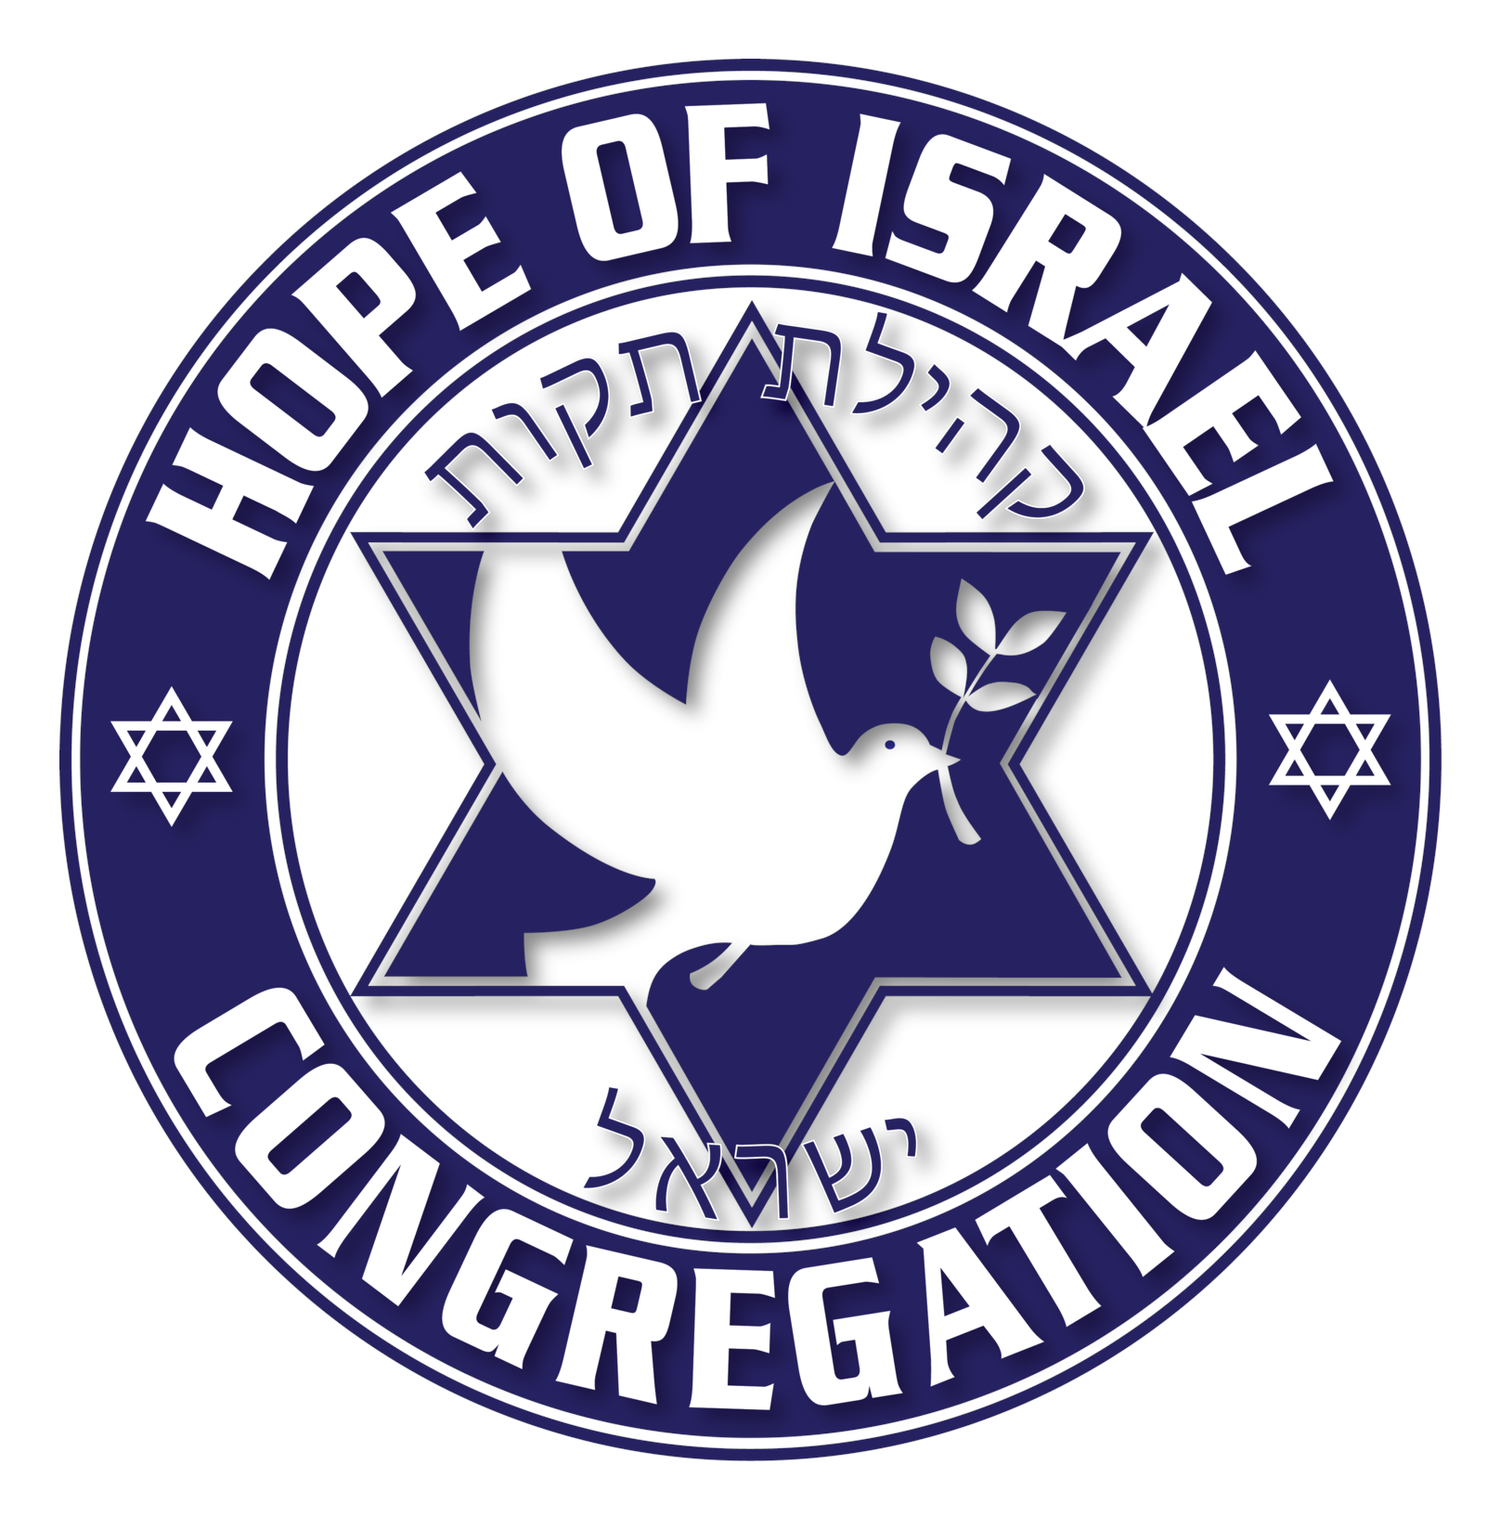 Hope of Israel Congregation